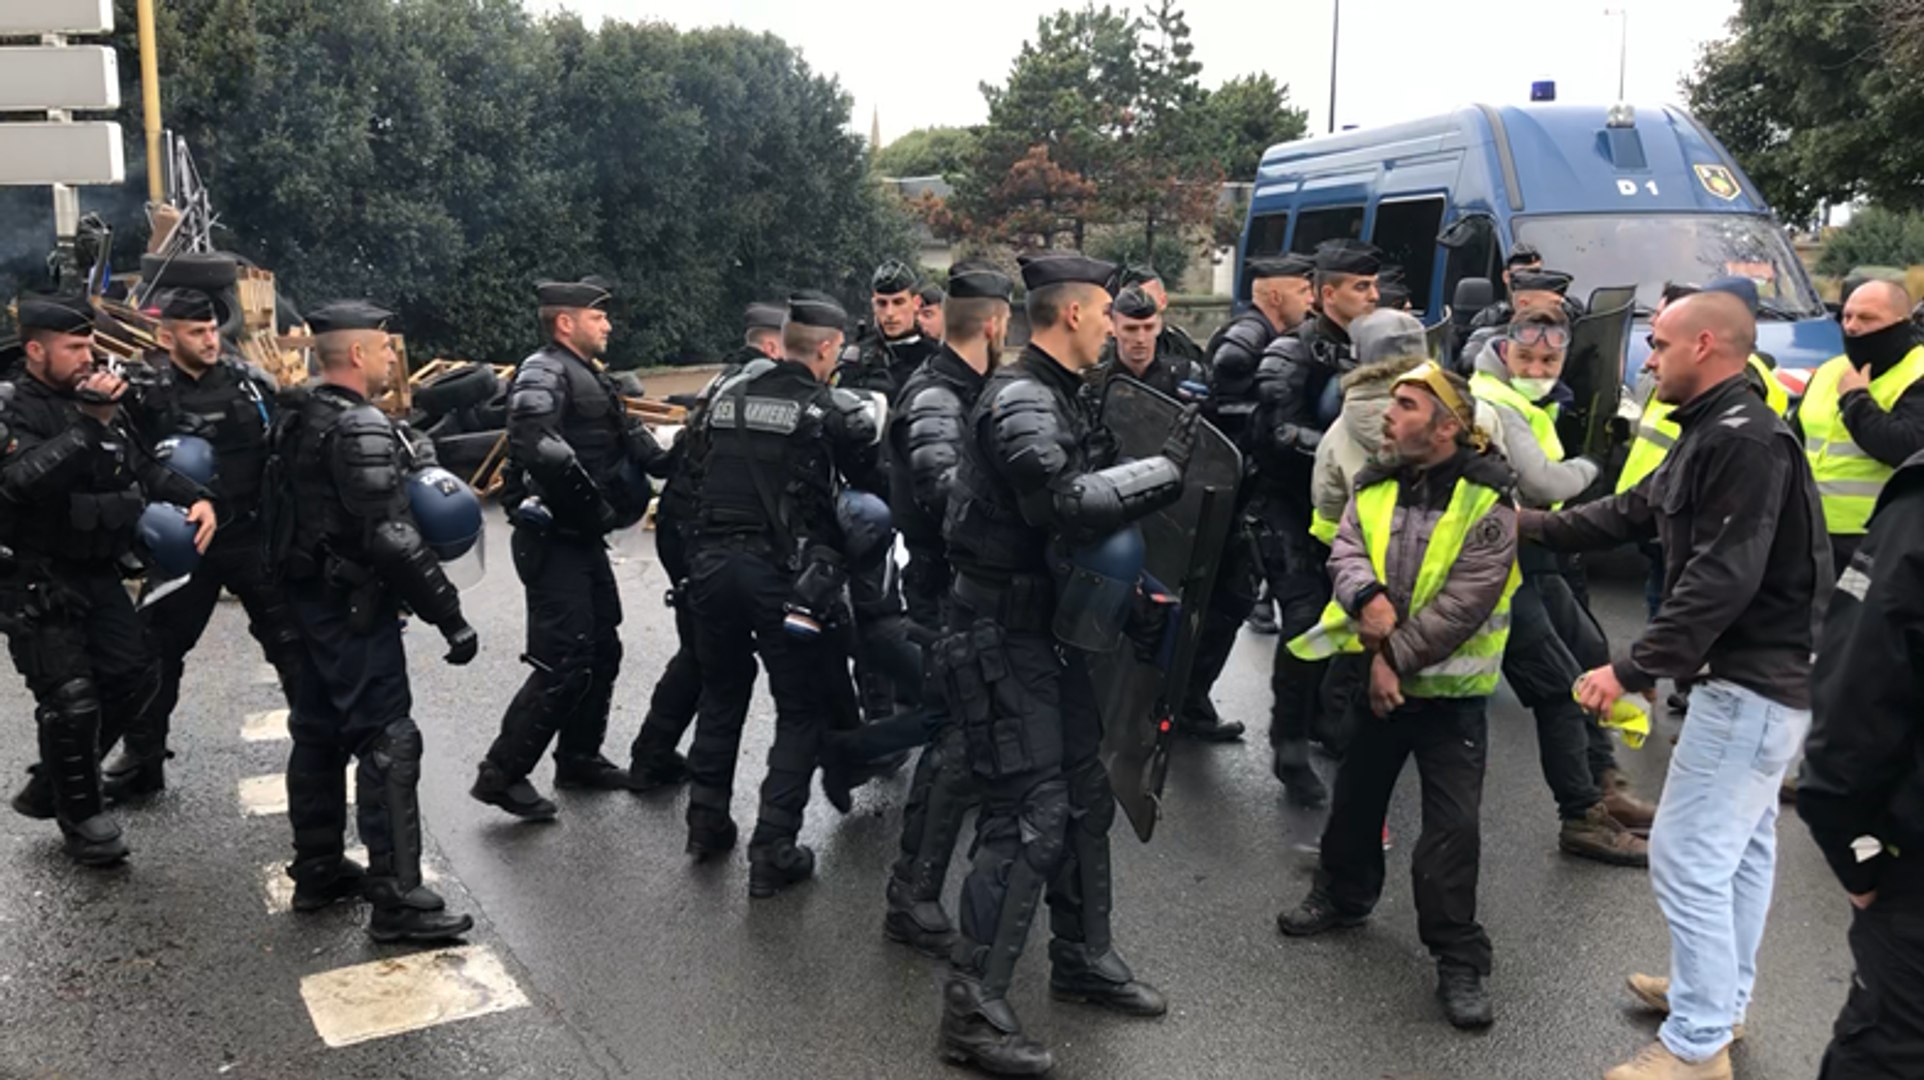 Les gendarmes mobiles évacuent les Gilets jaunes - Vidéo Dailymotion